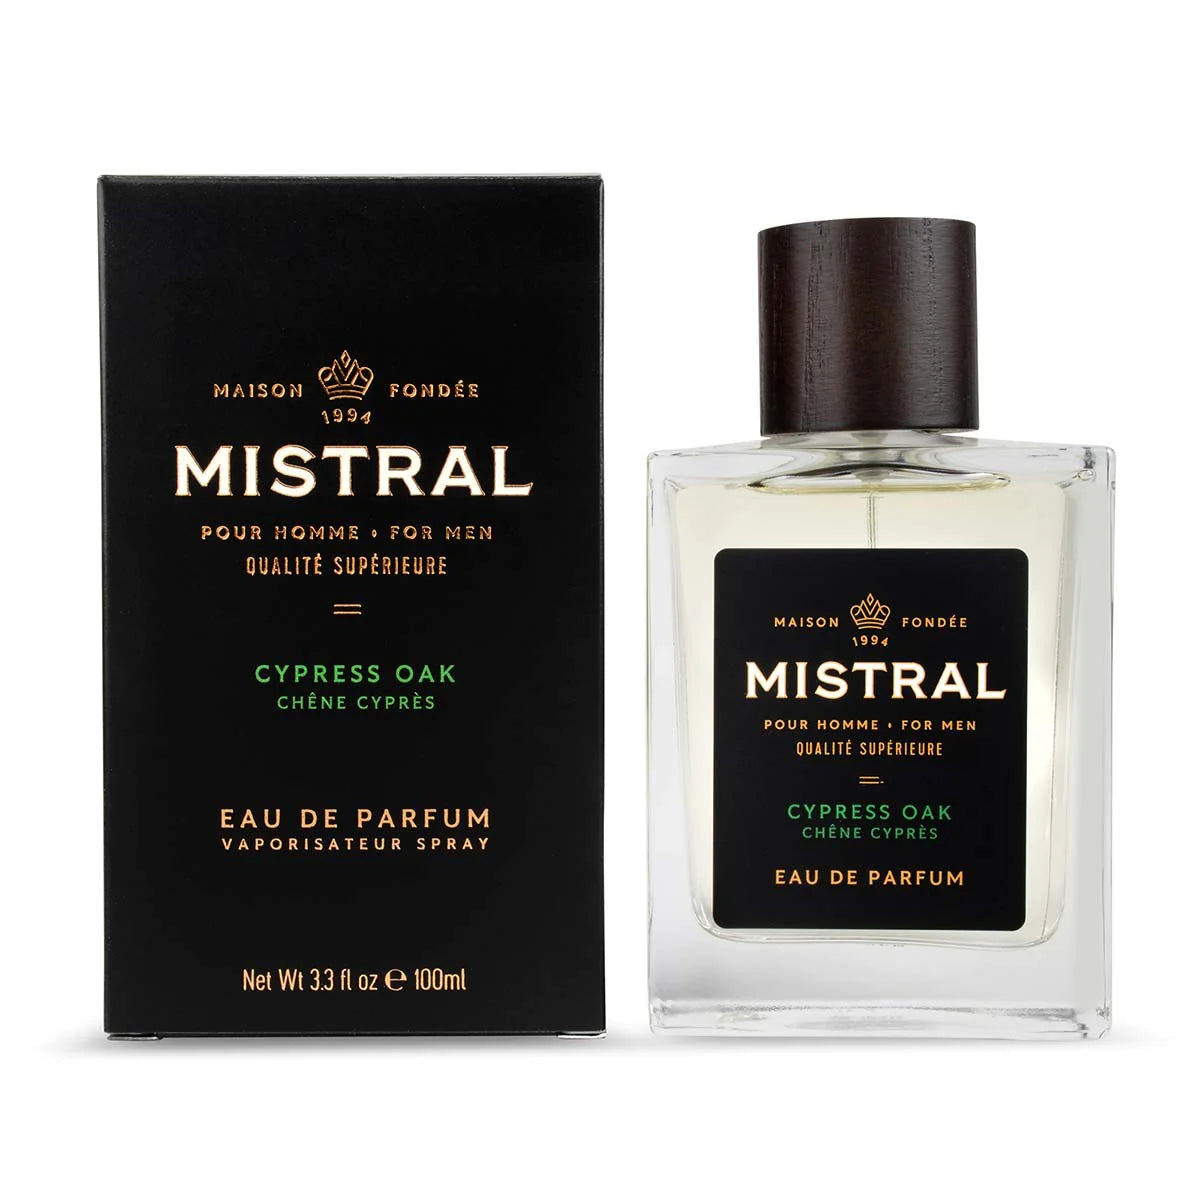 Mistral - Eau de parfum - Chene cypres